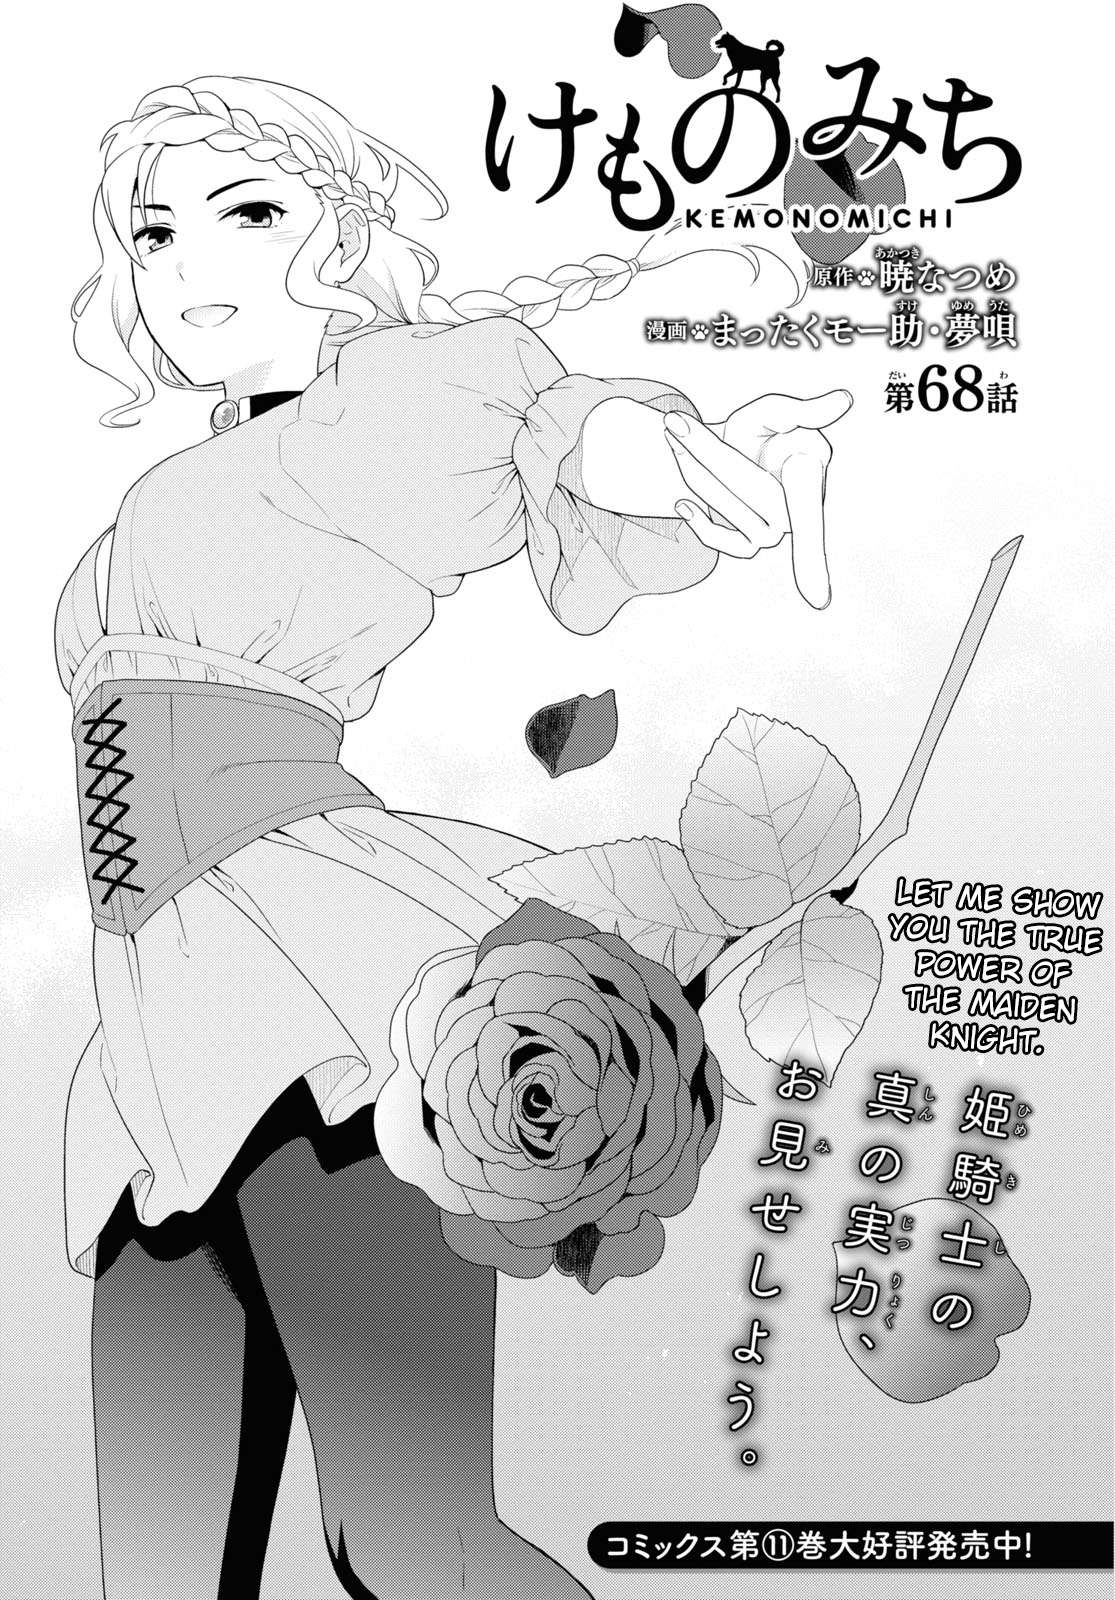 Read Kemono Michi (Natsume Akatsuki) 11 - Oni Scan